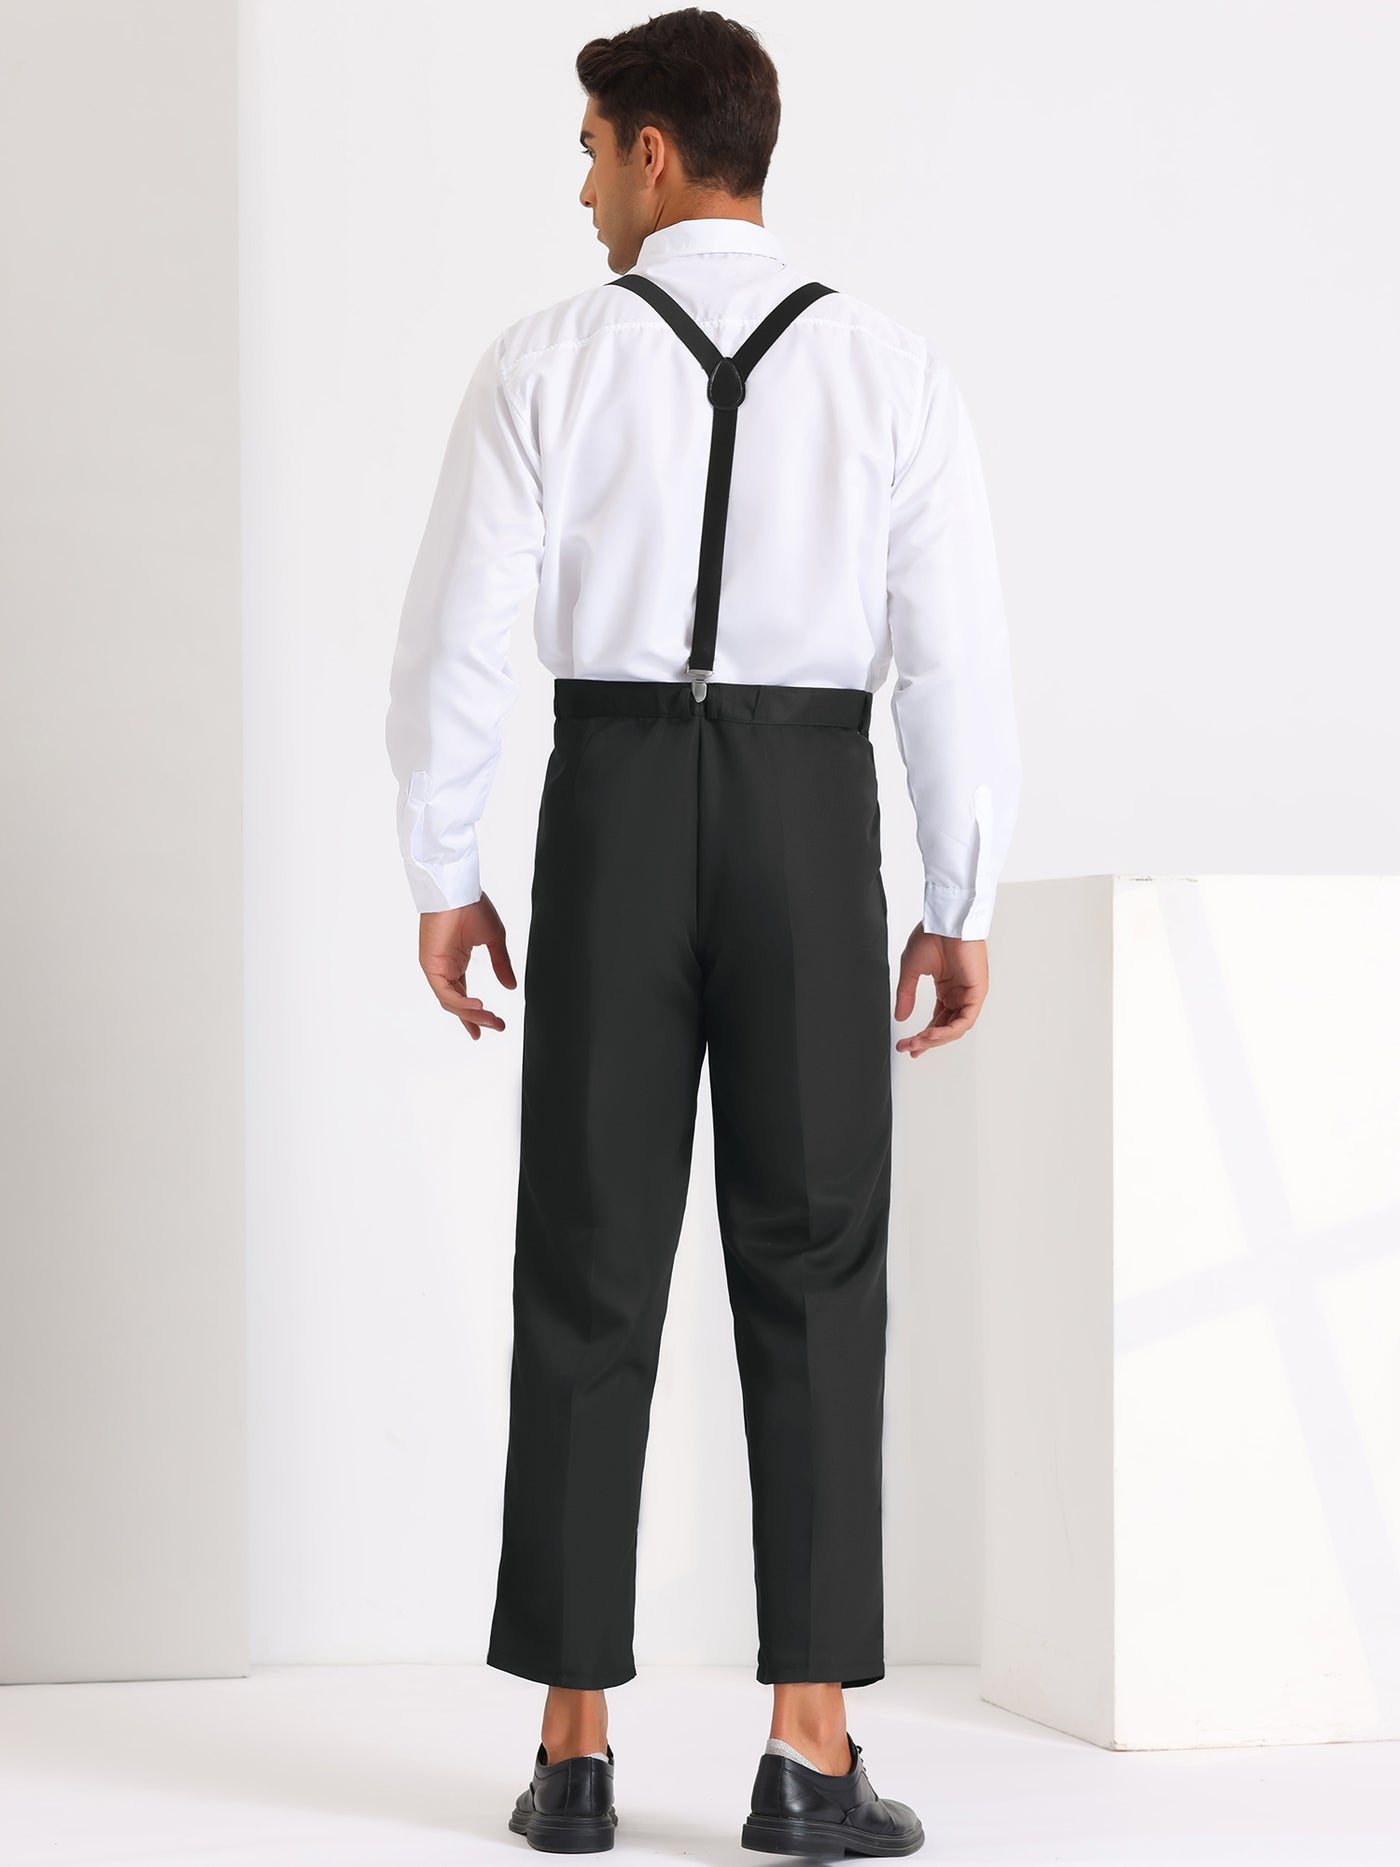 Bublédon 3 Pieces Suits for Men's Business Wedding Dress Shirt Pants with Suspender Sets